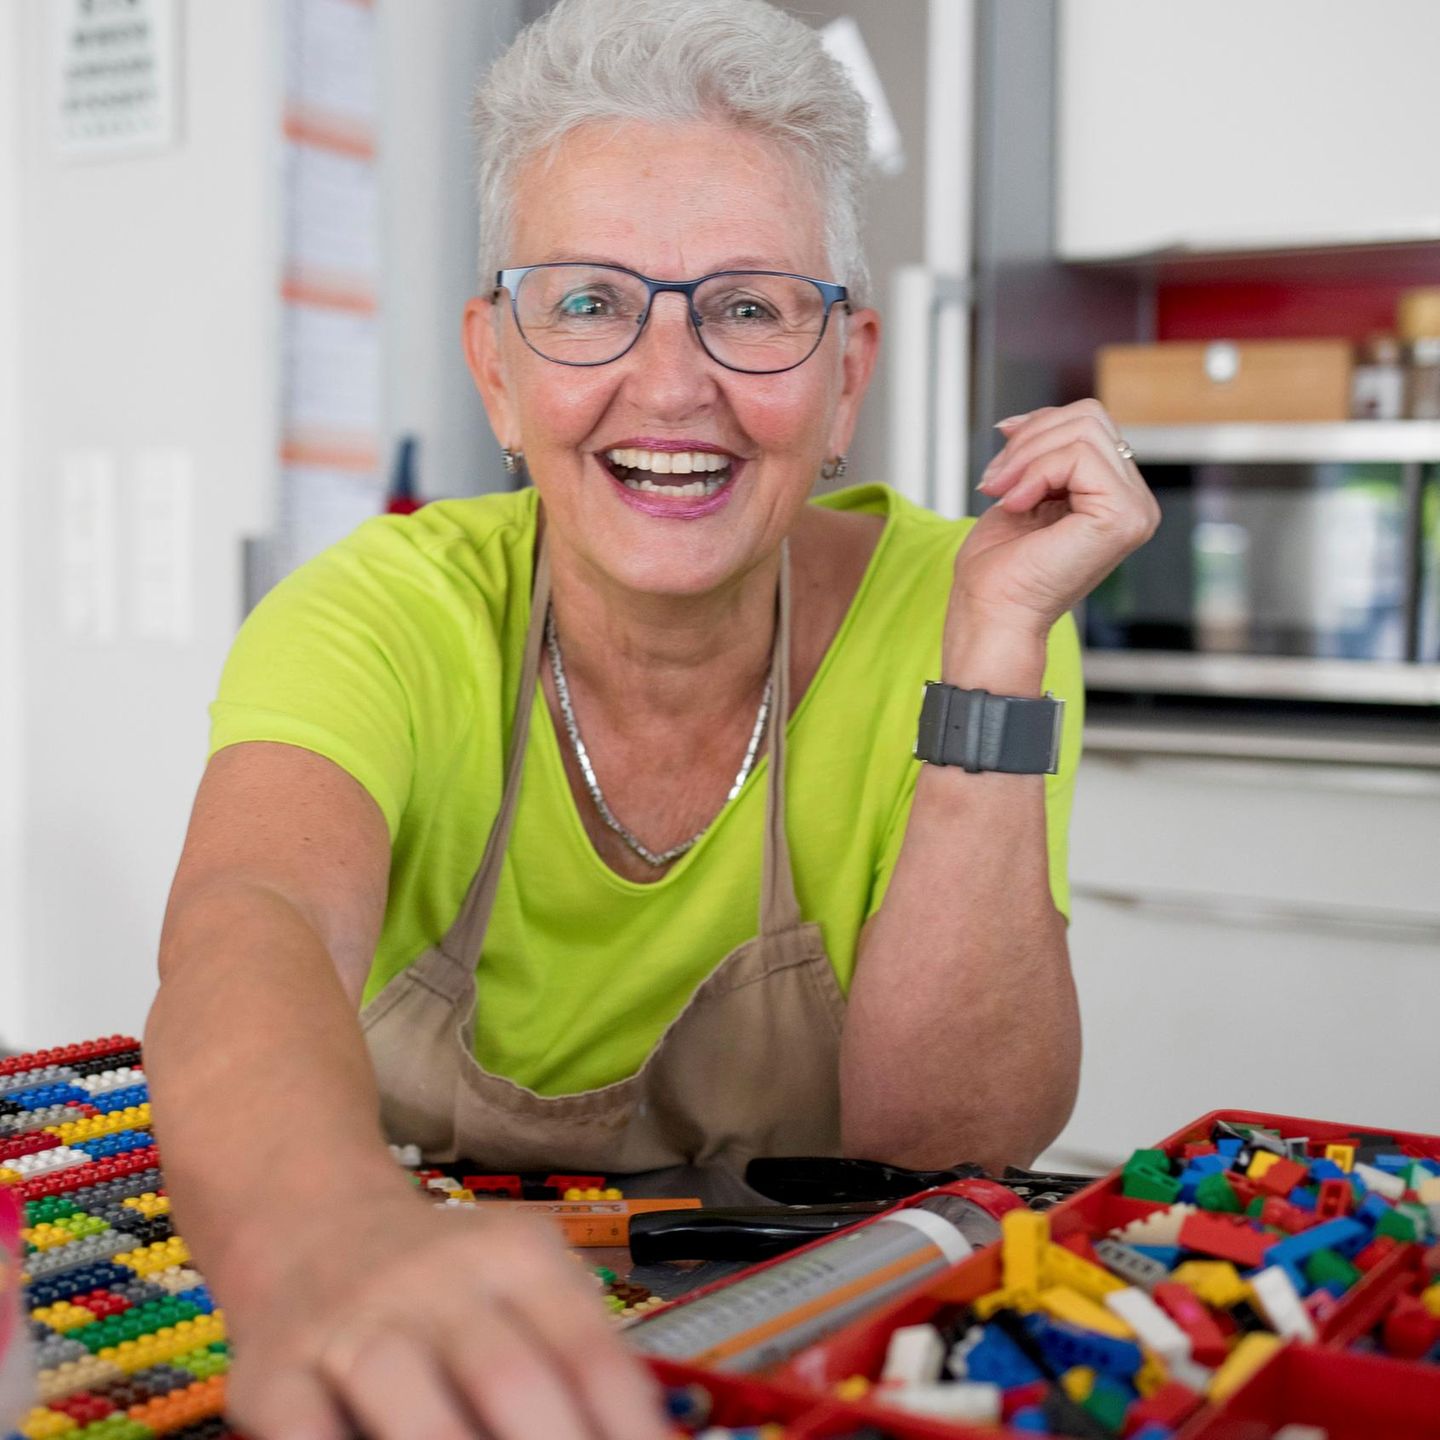 Eine ältere Frau sitzt in ihrer Küche und hat viele Legosteine vor sich auf dem Tisch liegen